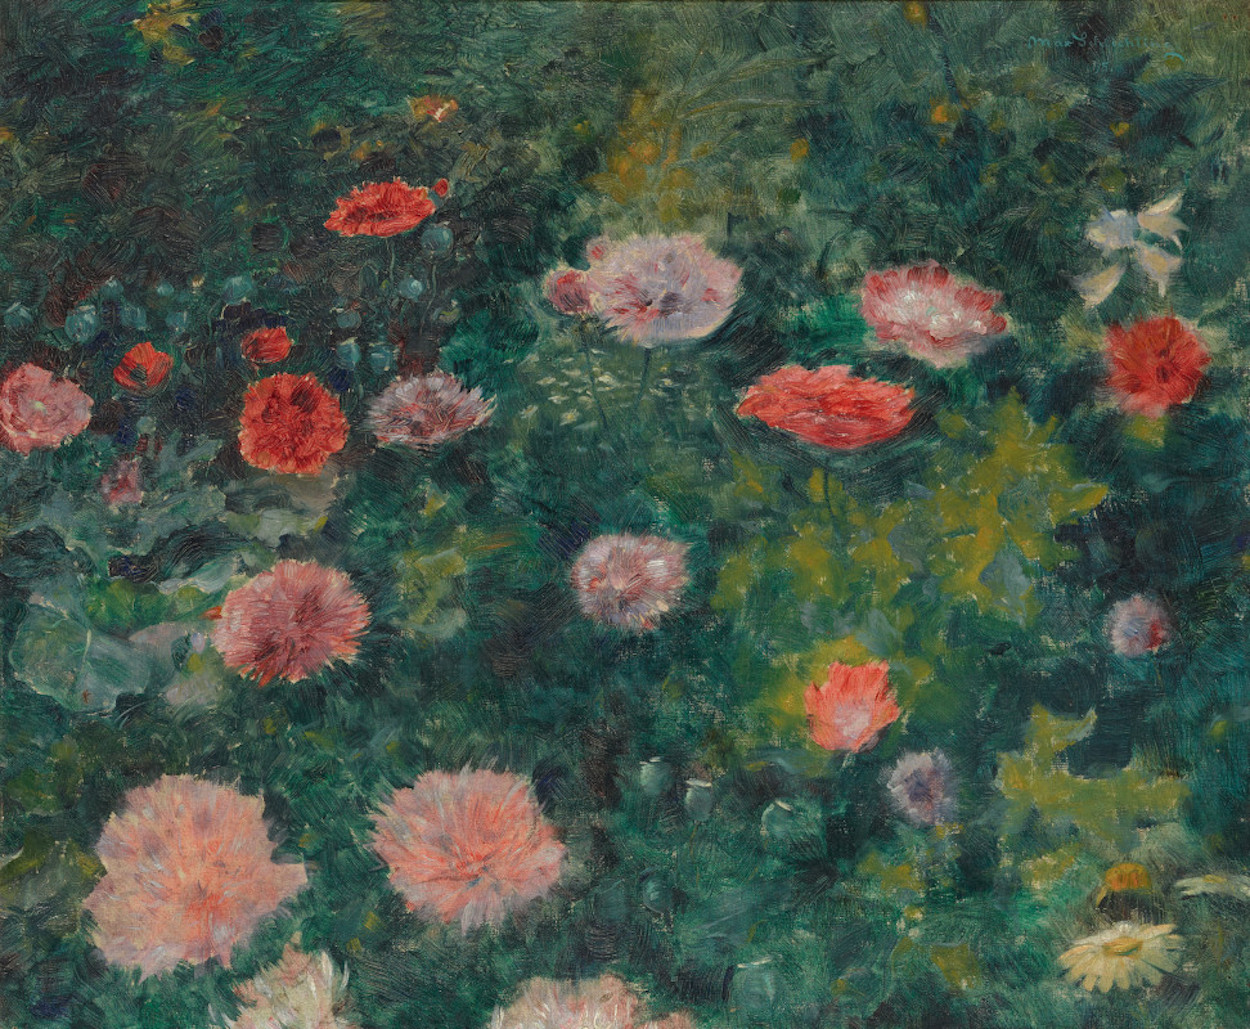 盛开的罂粟 by 马克斯 施利青 - 1895 - 48 x 57 cm 旧国家美术馆